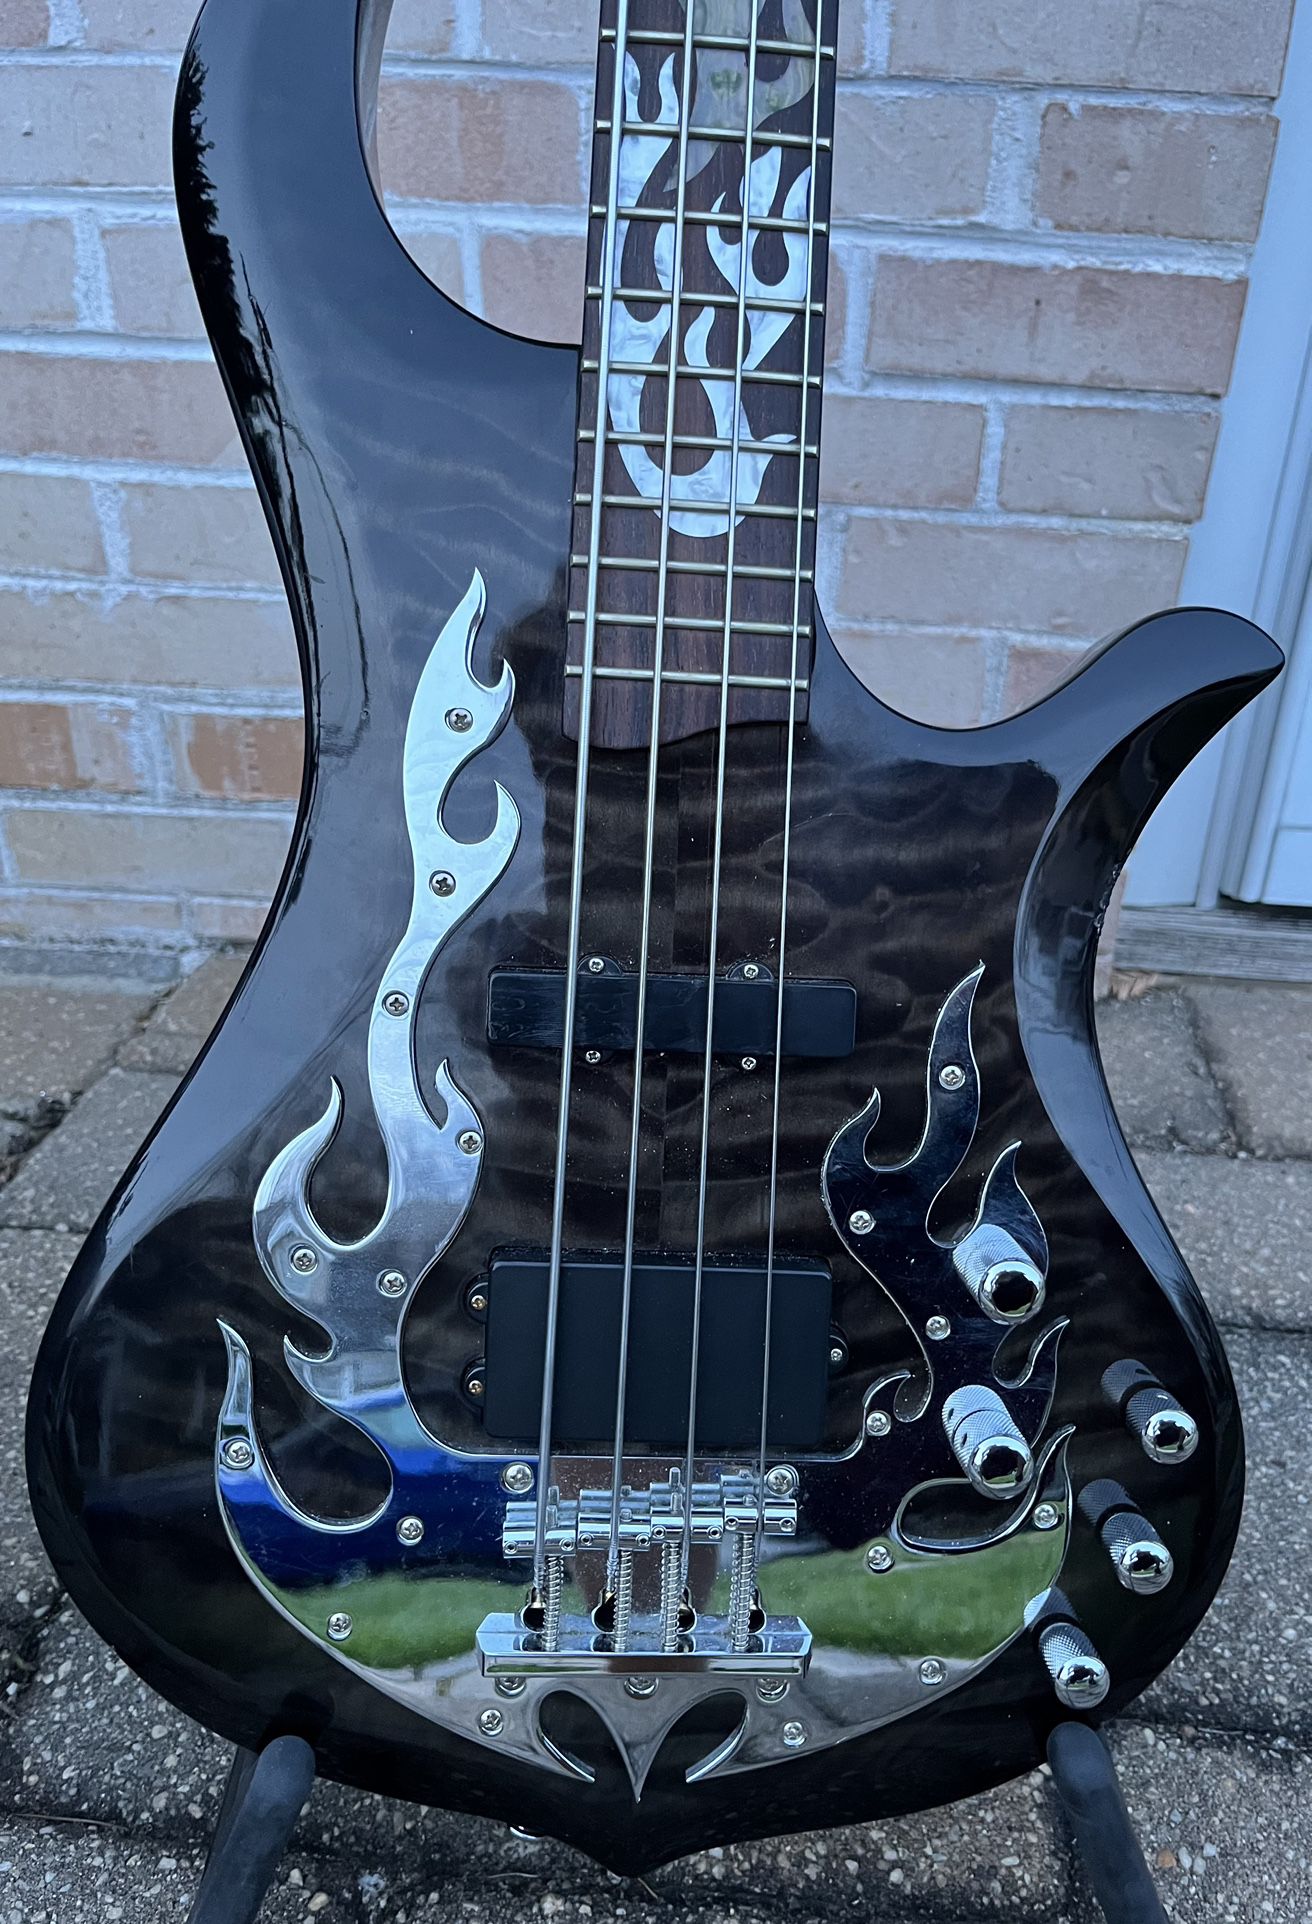 Traben Phoenix Bass Guitar - Rare find!